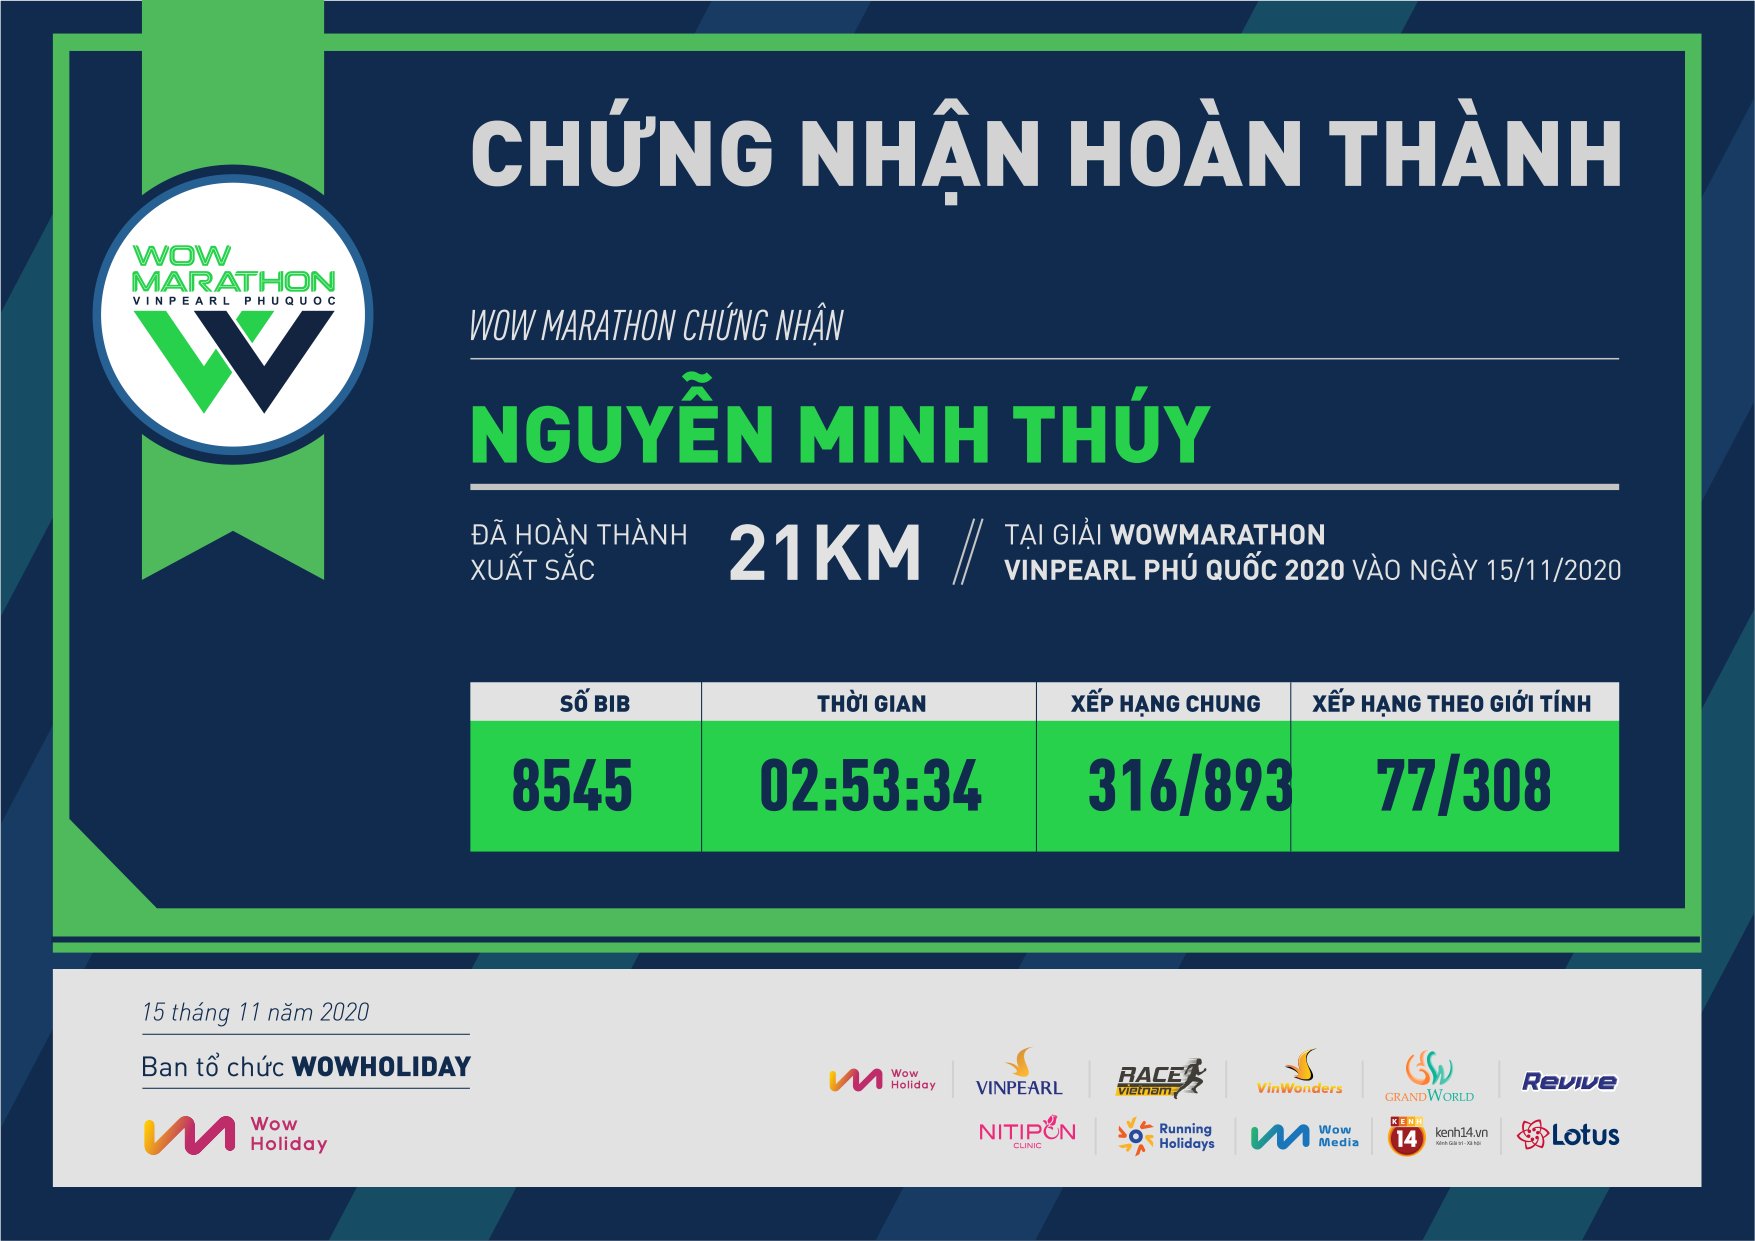 8545 - Nguyễn Minh Thúy